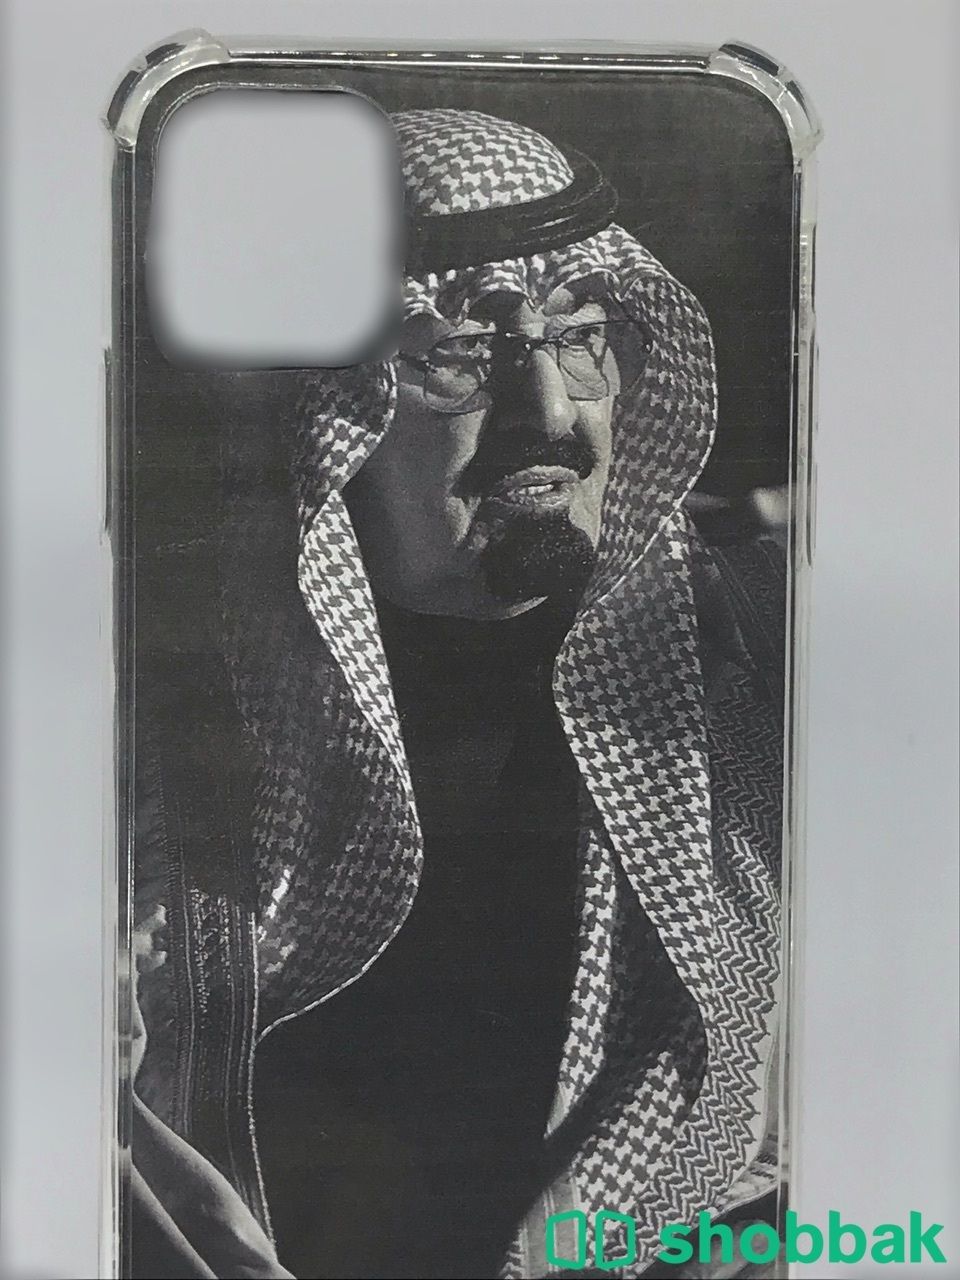 كڤرات جوال من رسم يدي او طباعه حسب الطلب للبيع Shobbak Saudi Arabia